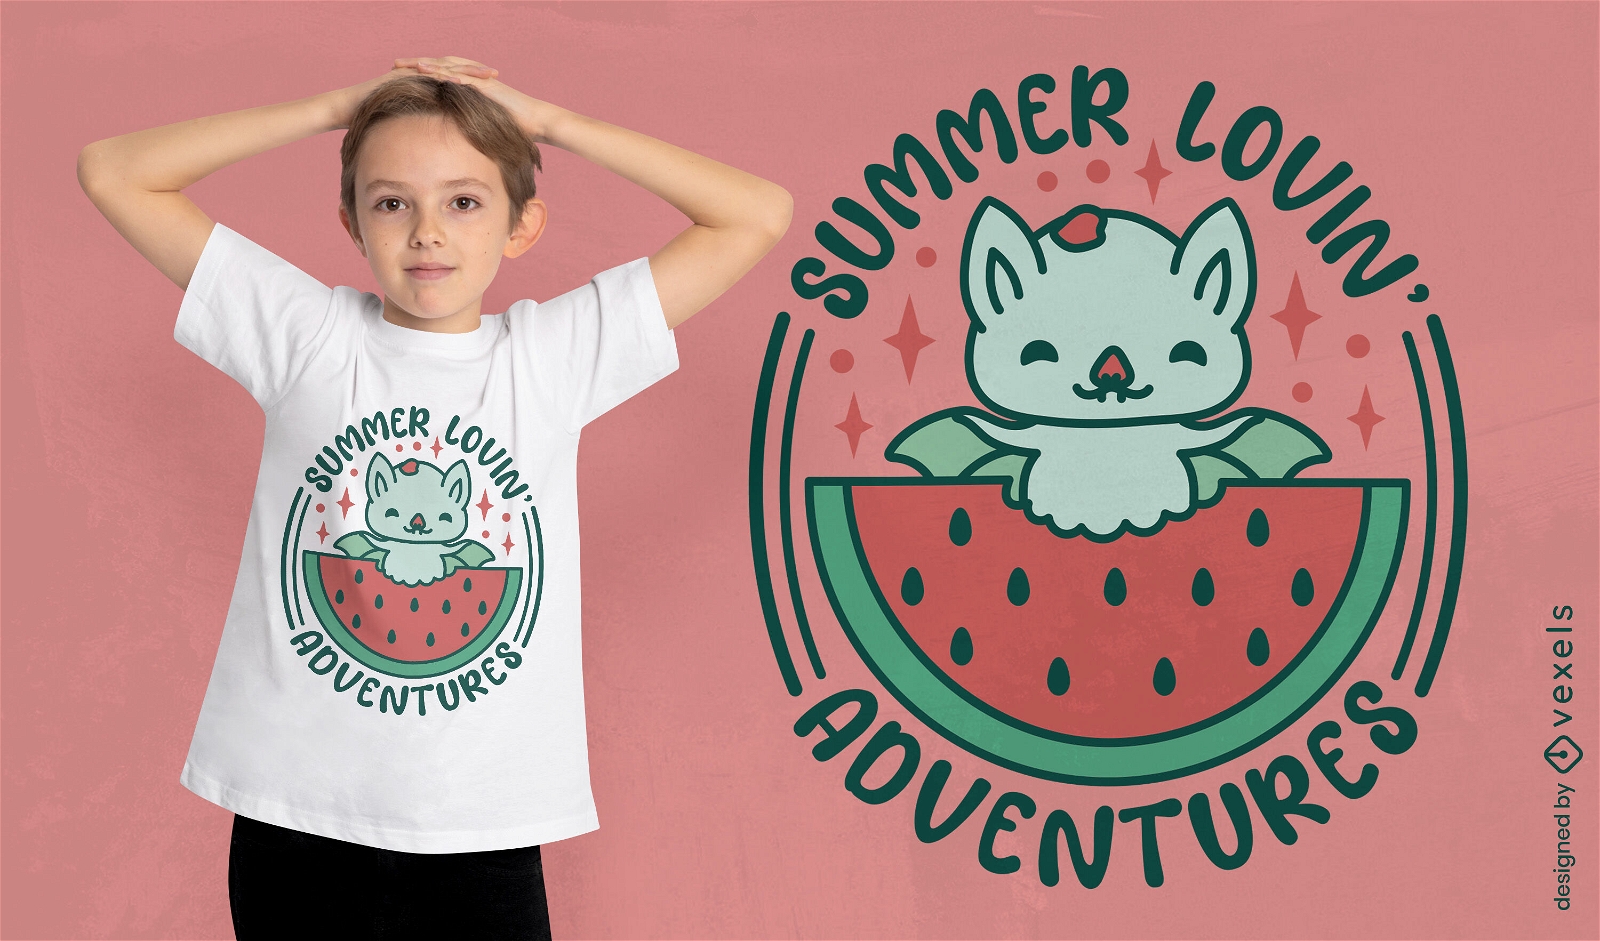 Summer cute bat t-shirt design